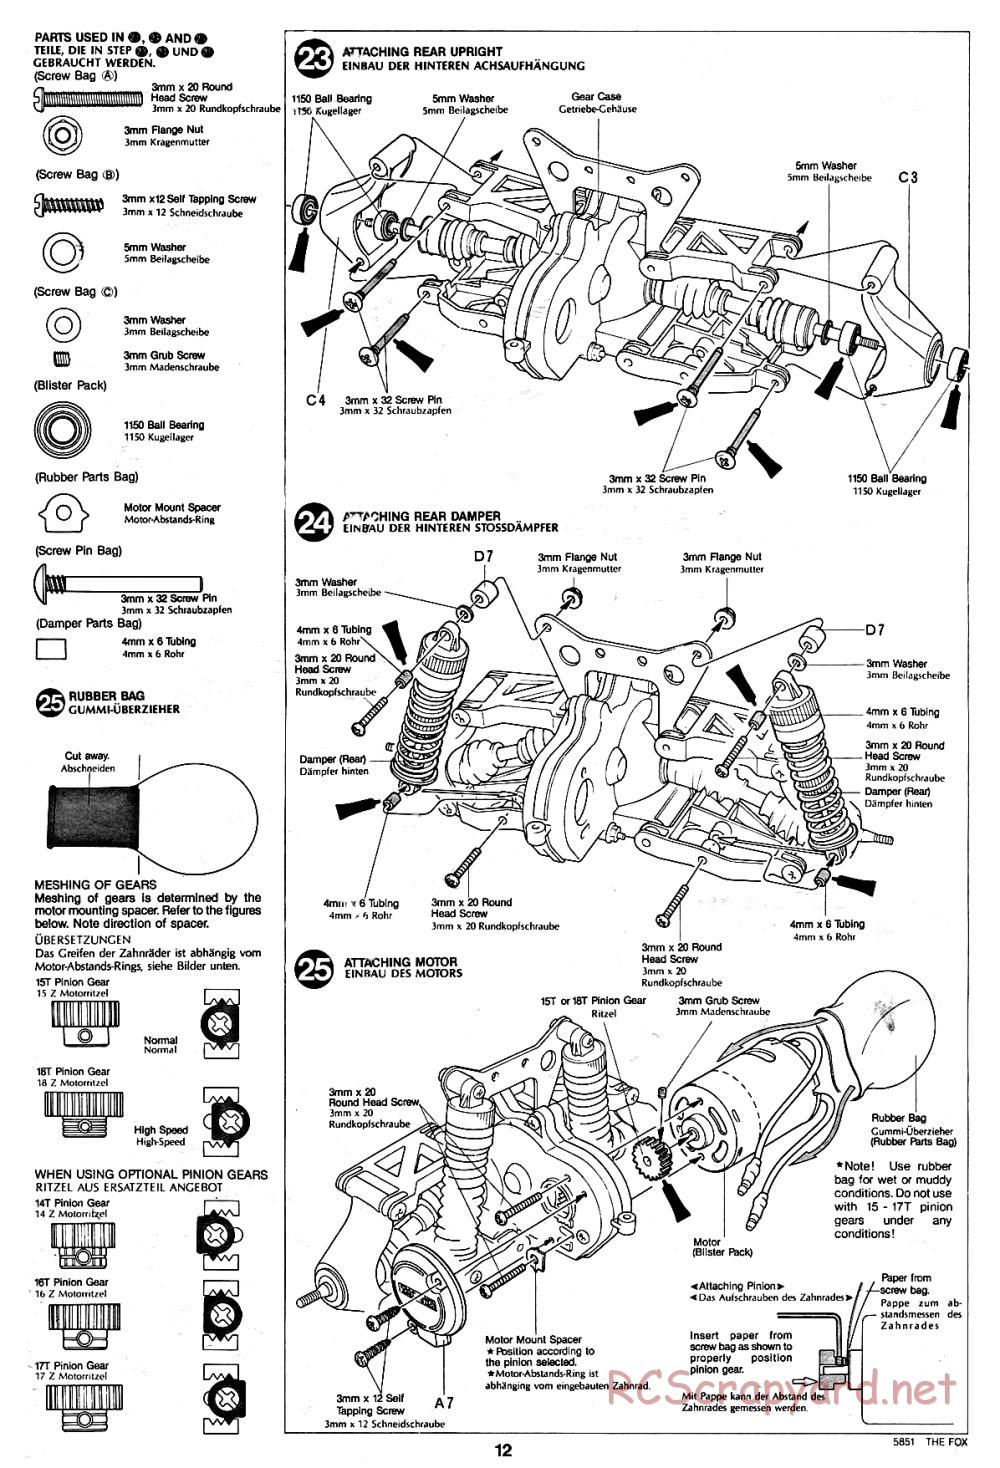 Tamiya - The Fox - 58051 - Manual - Page 12